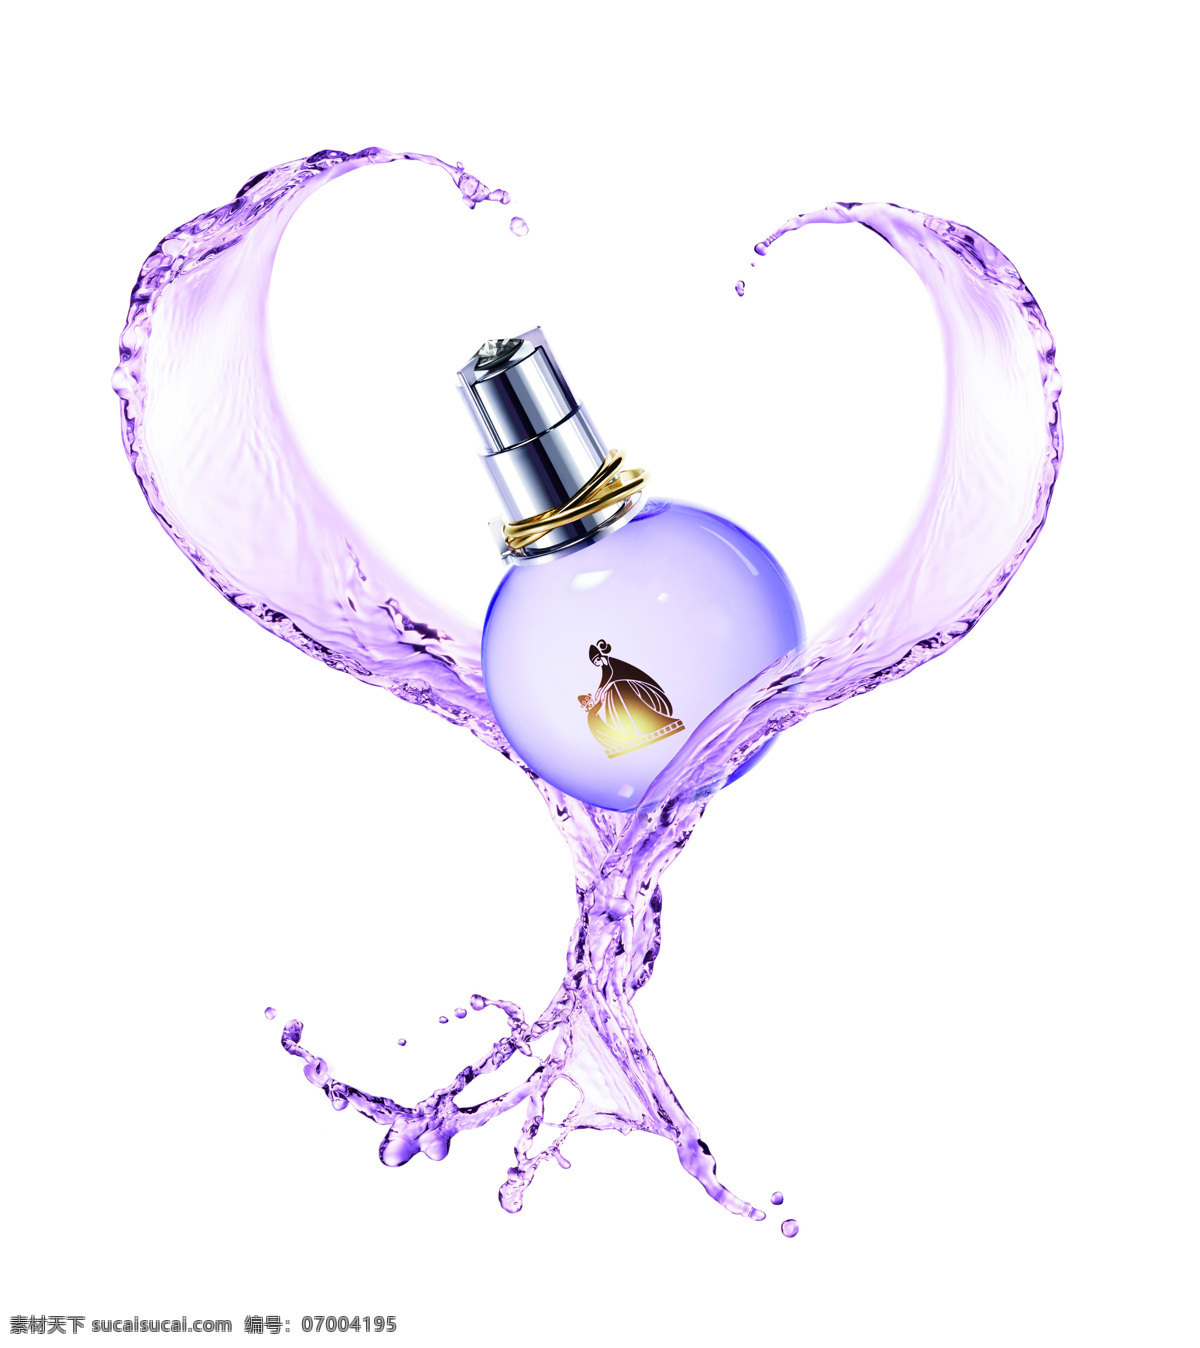 广告 户外 瓶子 设计图库 水滴 香水 香水广告 模板下载 样片 心形 飞跃的水 psd源文件